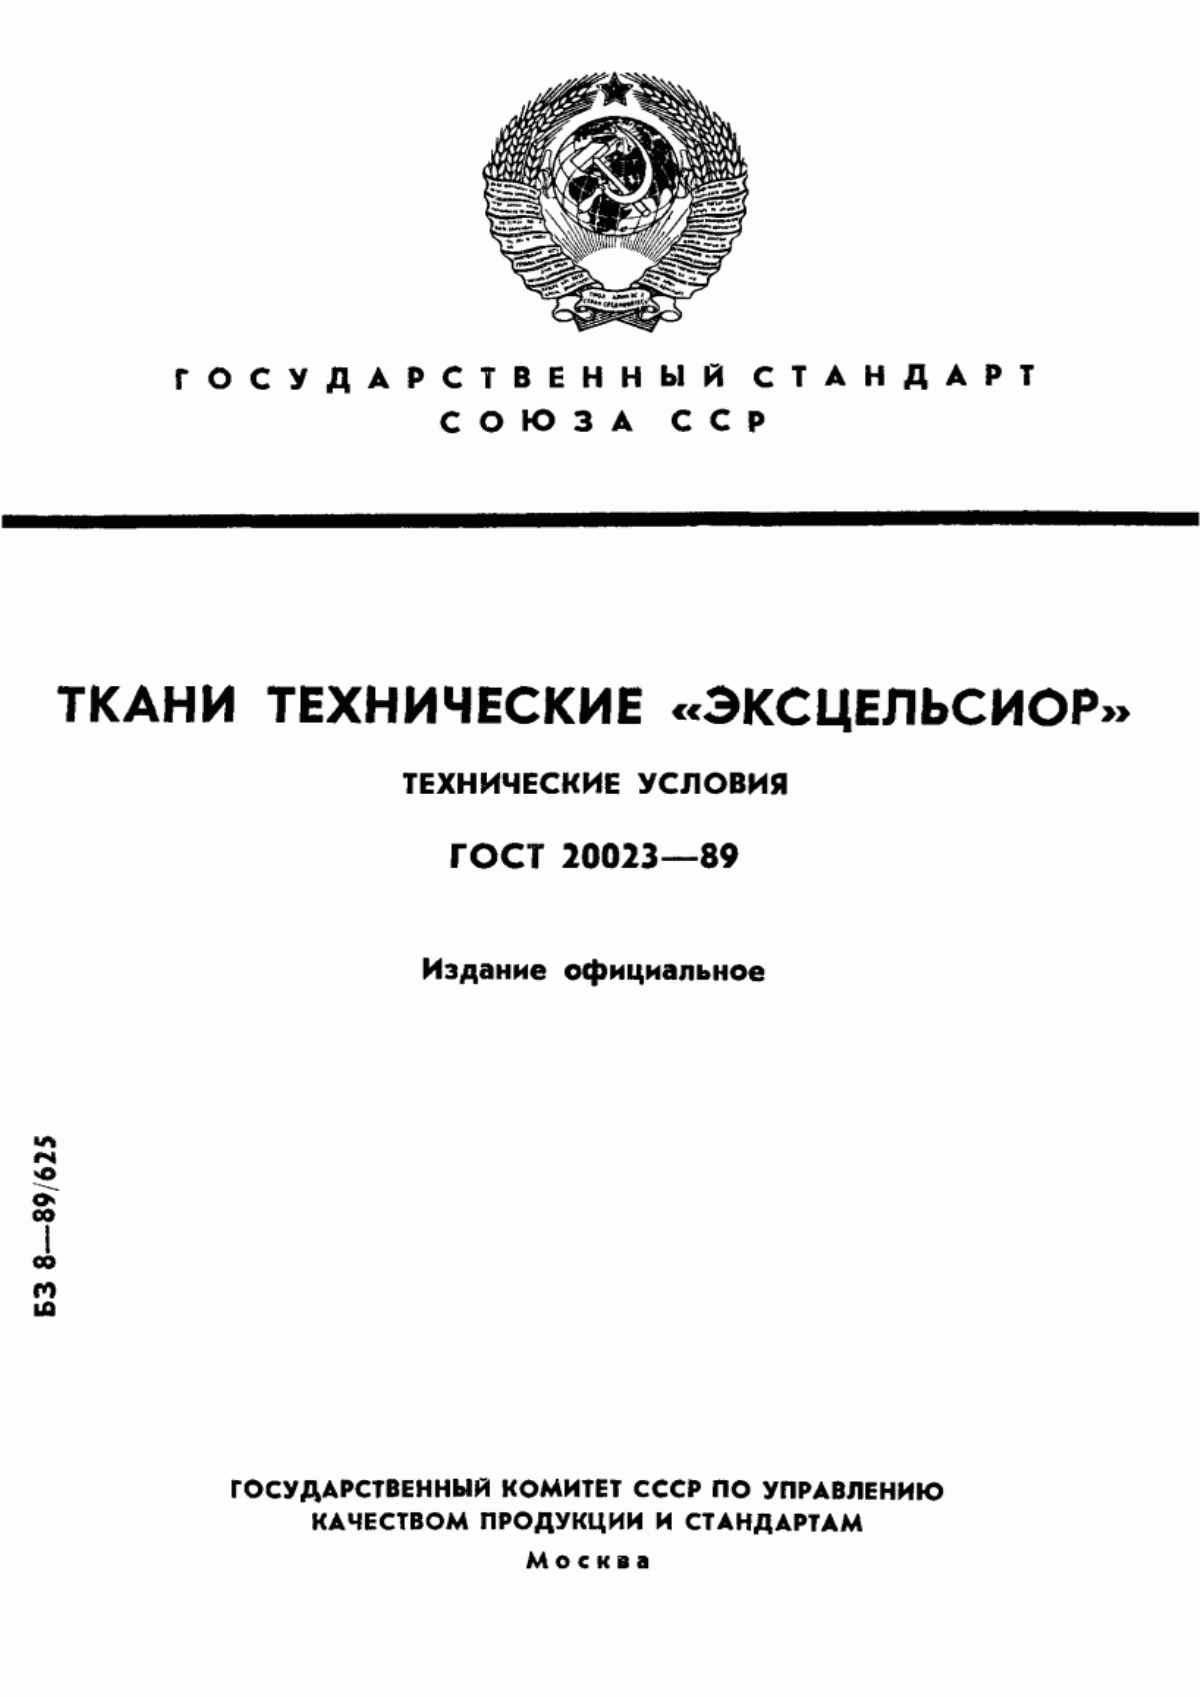 ГОСТ 20023-89 Ткани технические "Эксцельсиор". Технические условия